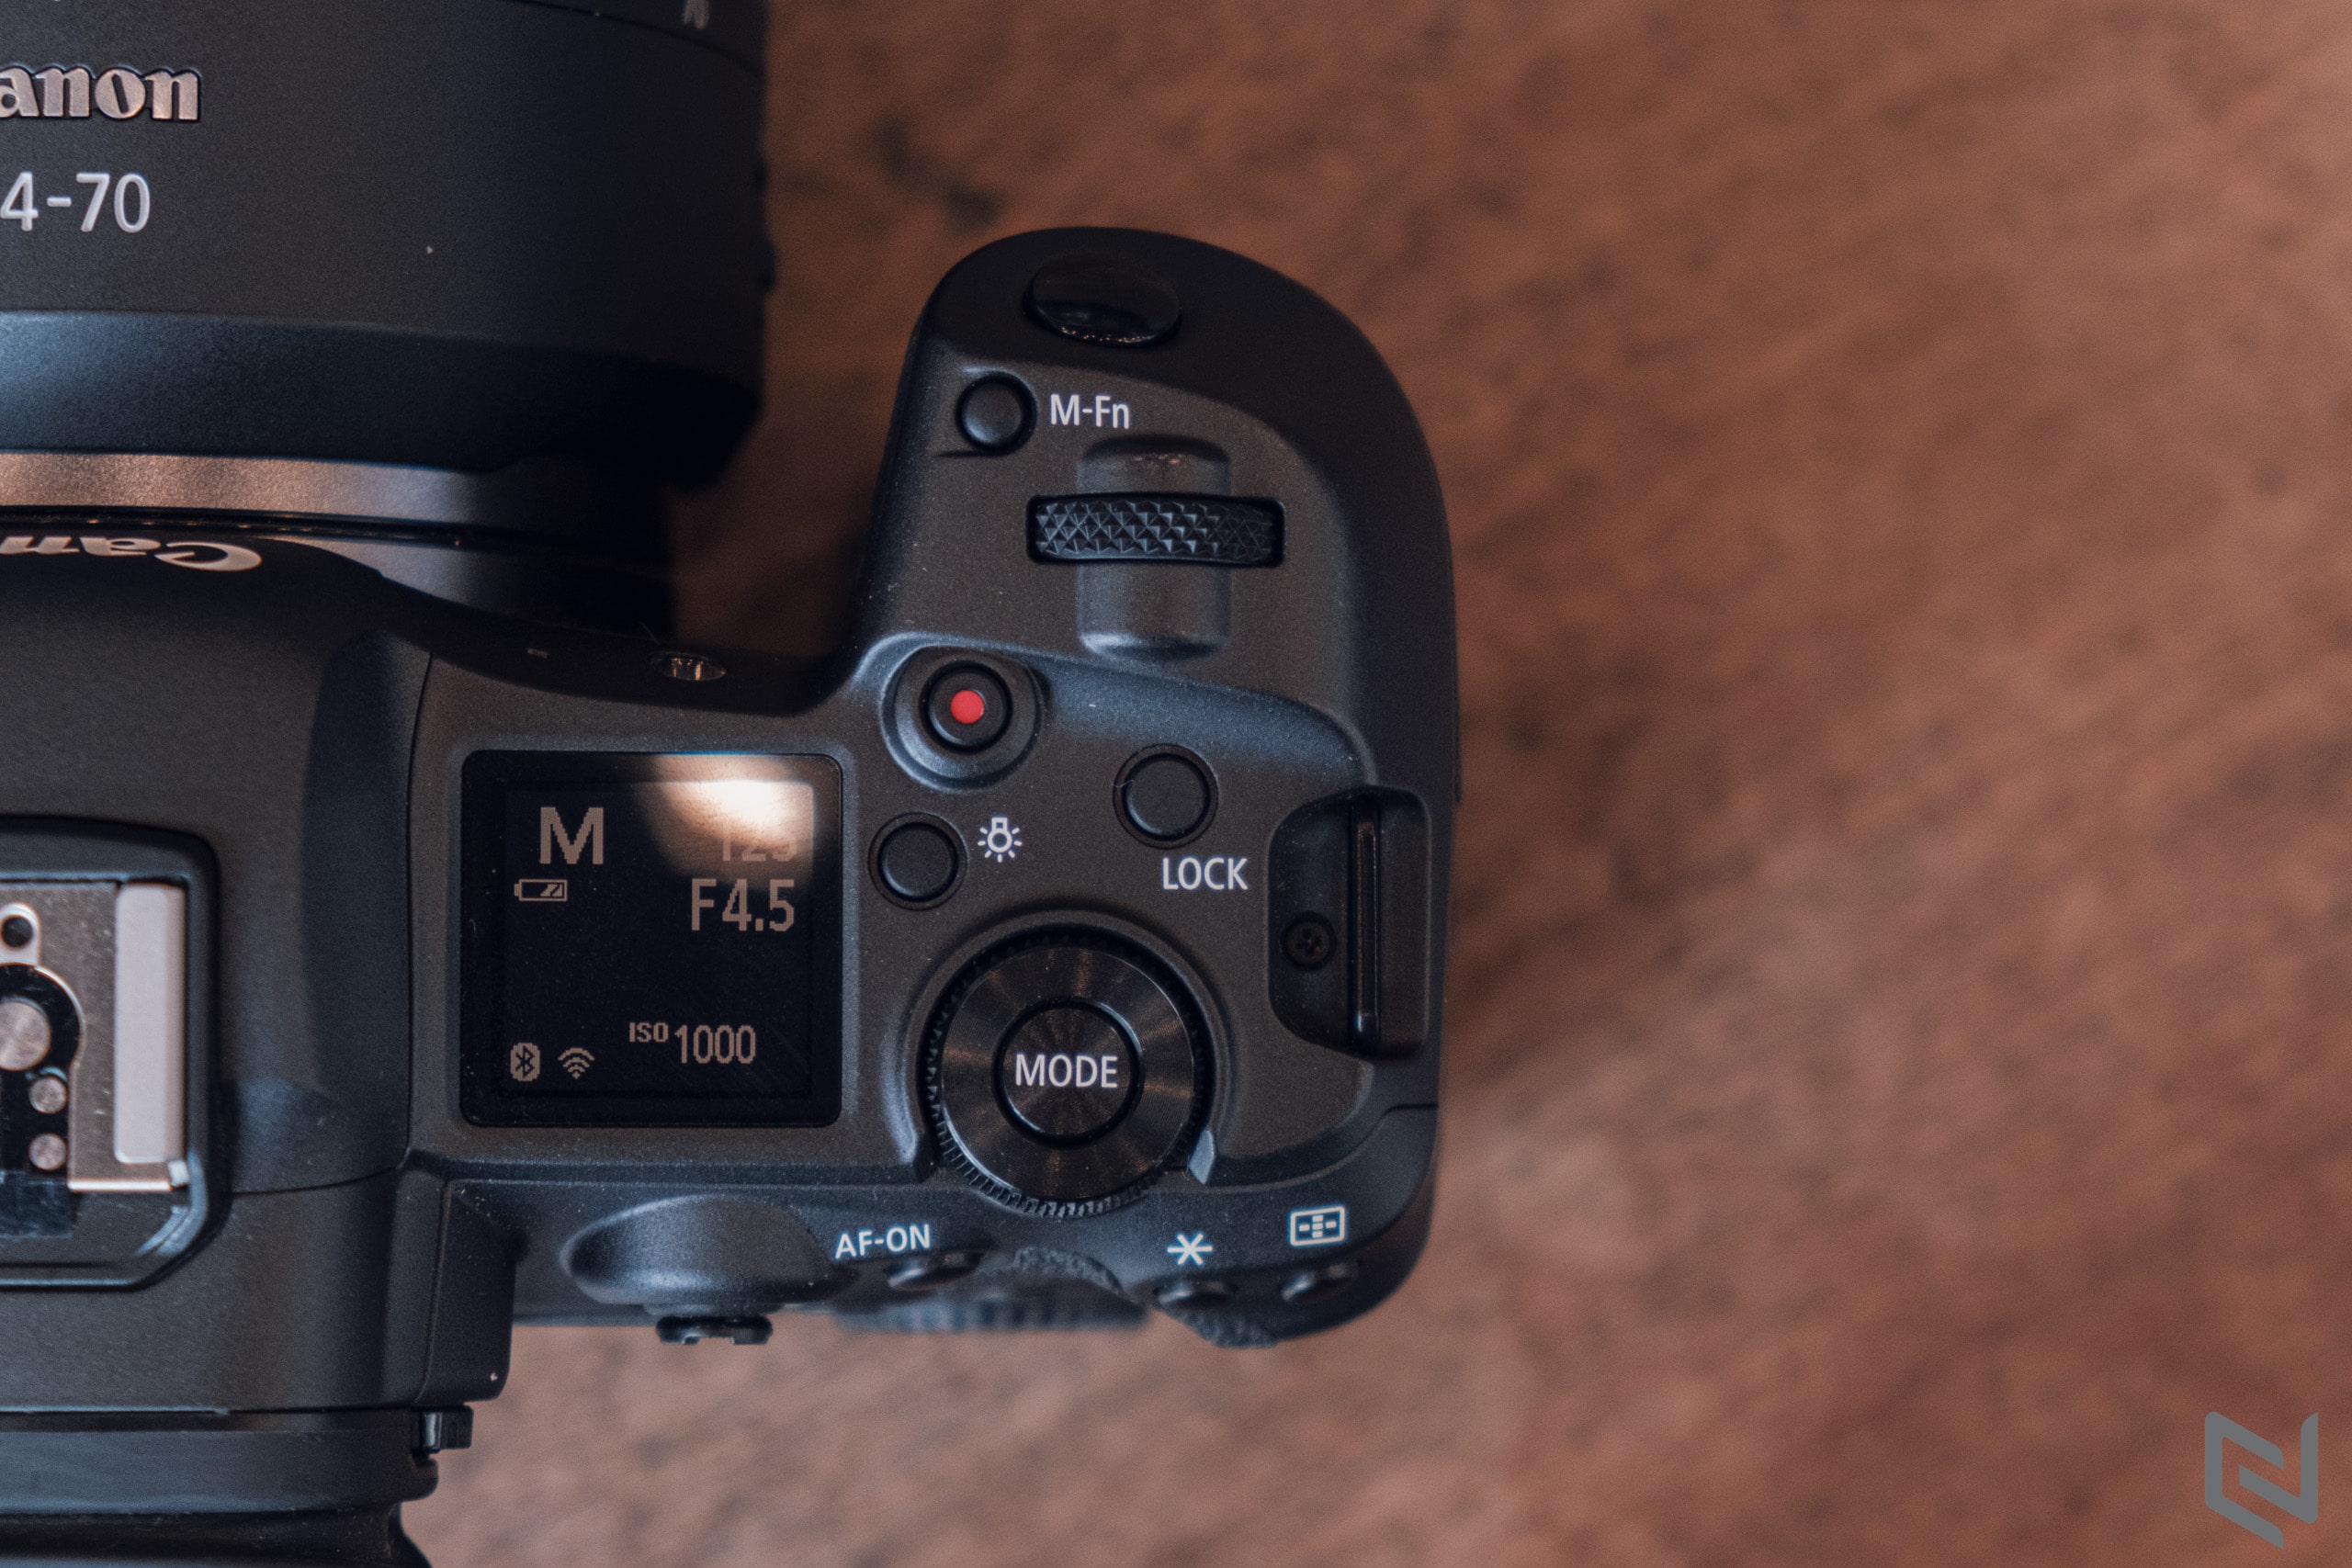 Trải nghiệm chụp ảnh với Canon EOS R5 và ống kính RF 24-70mm F2.8 L USM trị giá gần 190 triệu